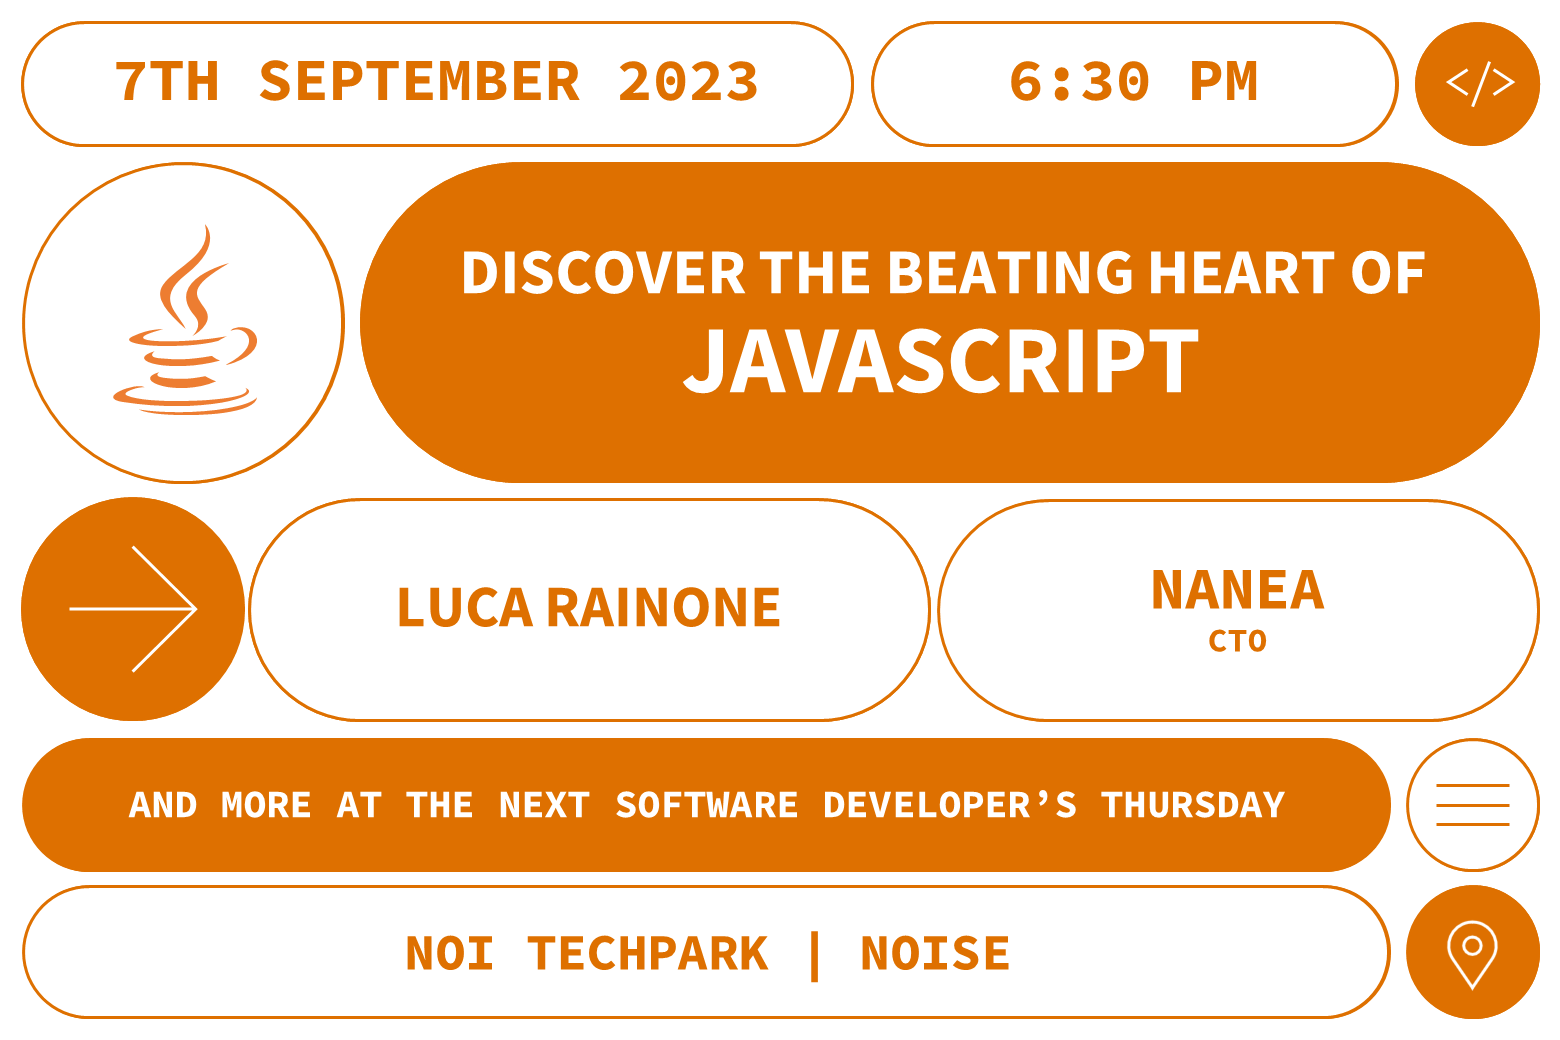 Software Developer's Thursday